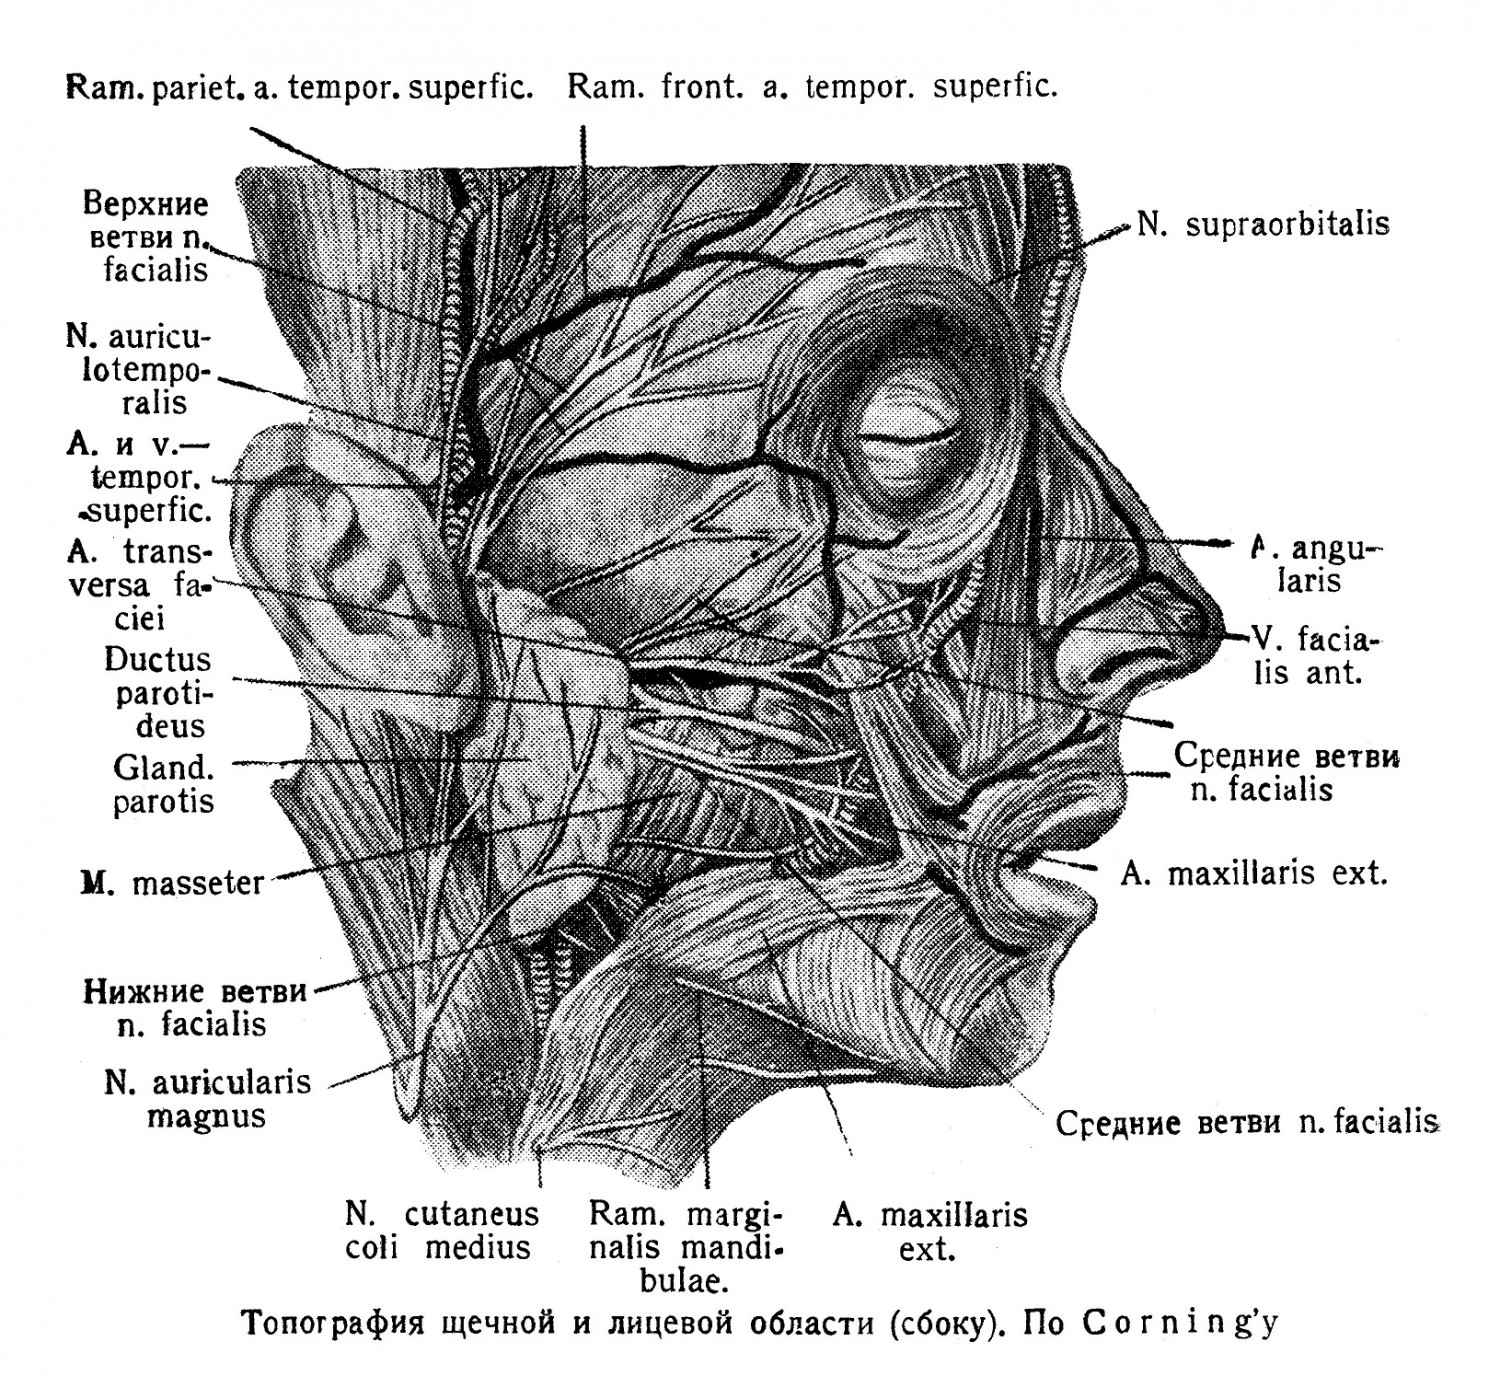 Топография щечной и лицевой области (сбоку). По Corning’y